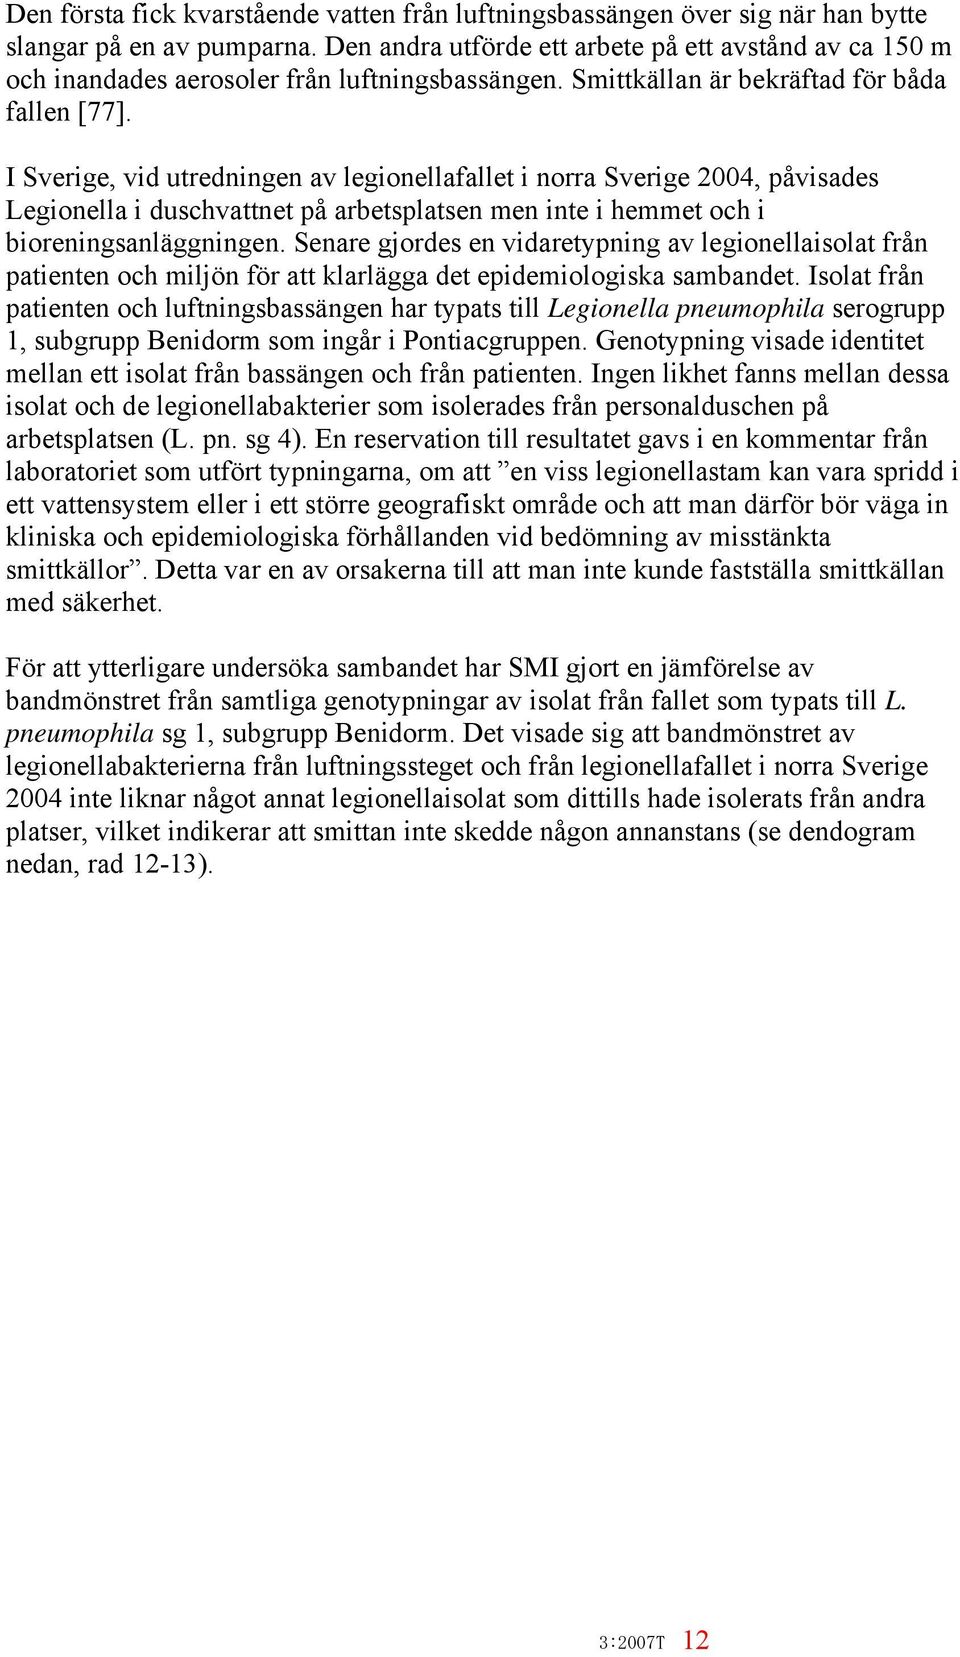 I Sverige, vid utredningen av legionellafallet i norra Sverige 2004, påvisades Legionella i duschvattnet på arbetsplatsen men inte i hemmet och i bioreningsanläggningen.